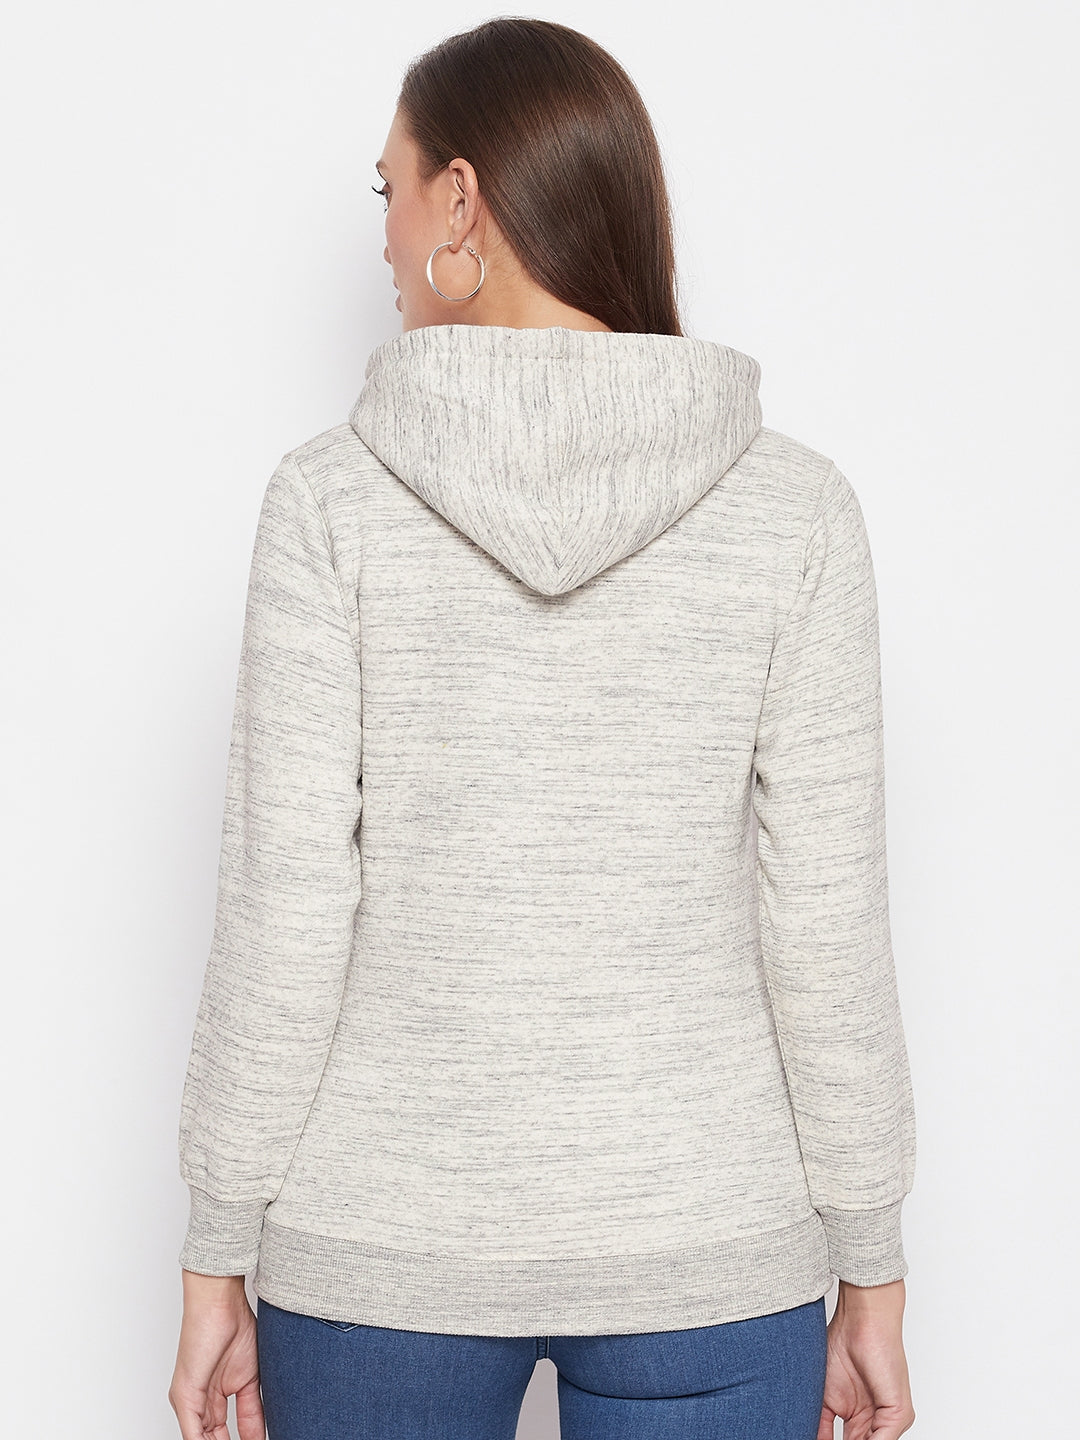 Livfree Women's Hoodie Full Sleeves Sweatshirt - Milange Grey